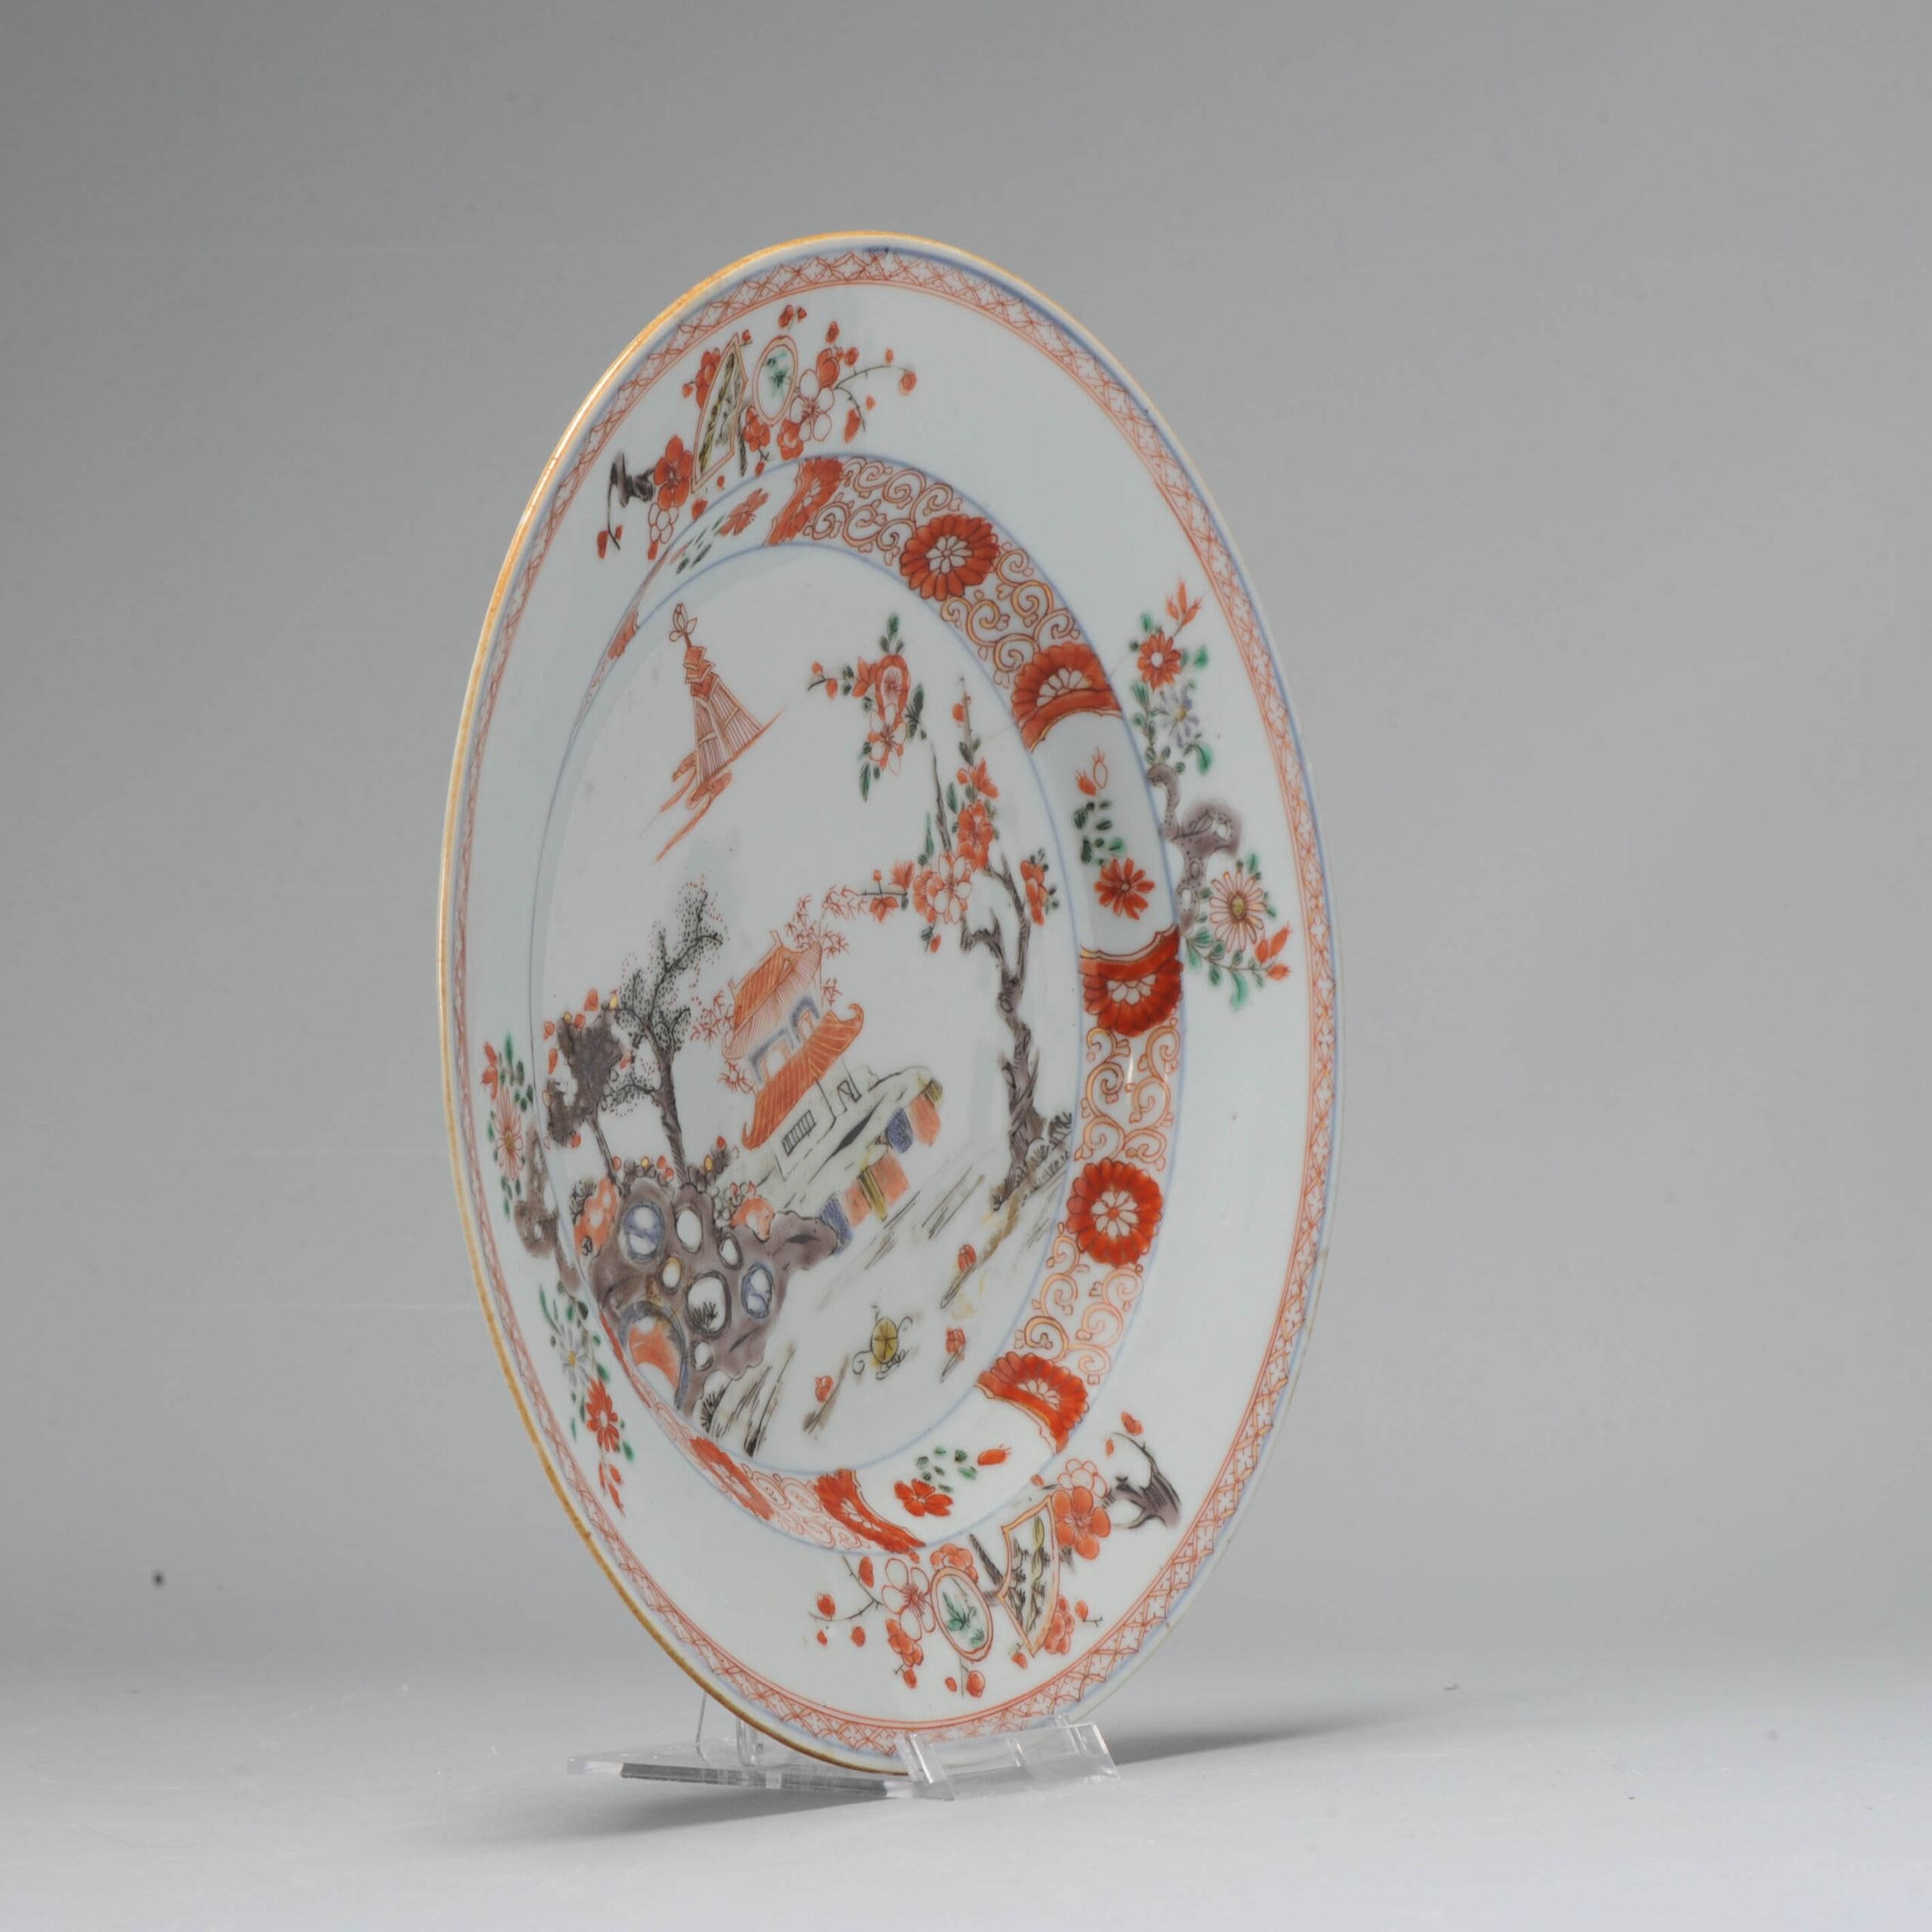 Dekoriert in verschiedenen Farben mit einer Landschaftsszene. Typischer Teller aus der Zeit um 1720-1730, als die Töpfer in Jingdezhen alle Arten von Dekoren beherrschten und sie nach Belieben kombinierten. Von Doucai bis Rouge die Fer. Eine sehr